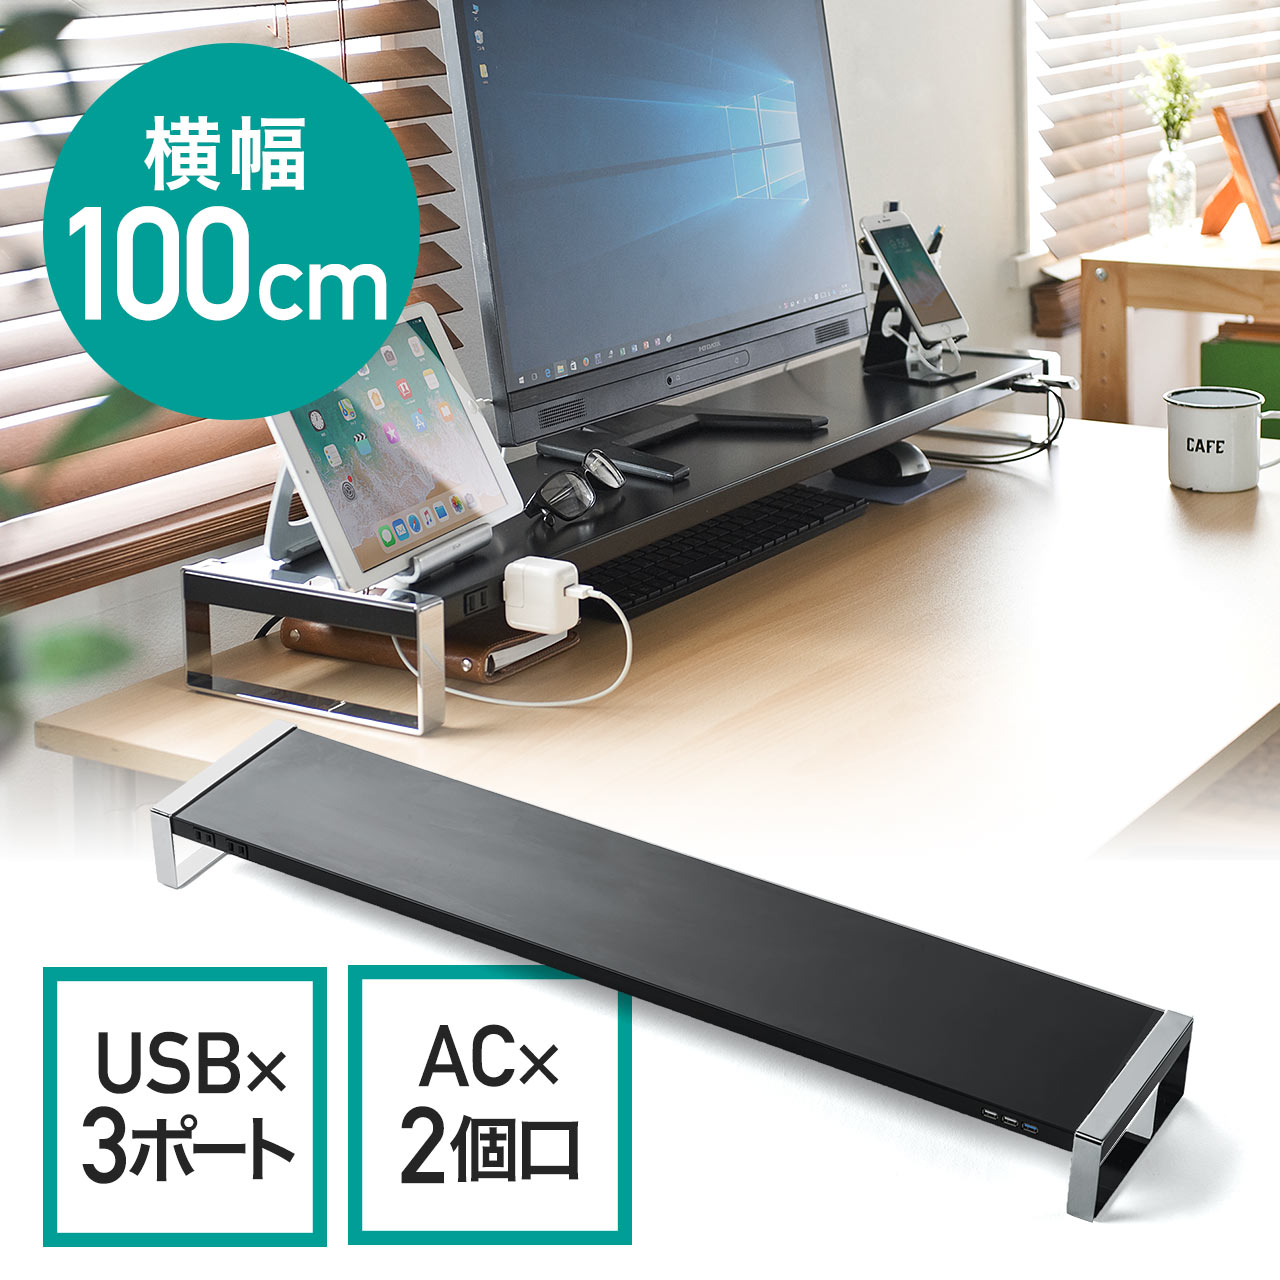 モニター台 机上台 幅100cm USB3.0 コンセント スチール製 ブラック 100-MR138BK |サンワダイレクト